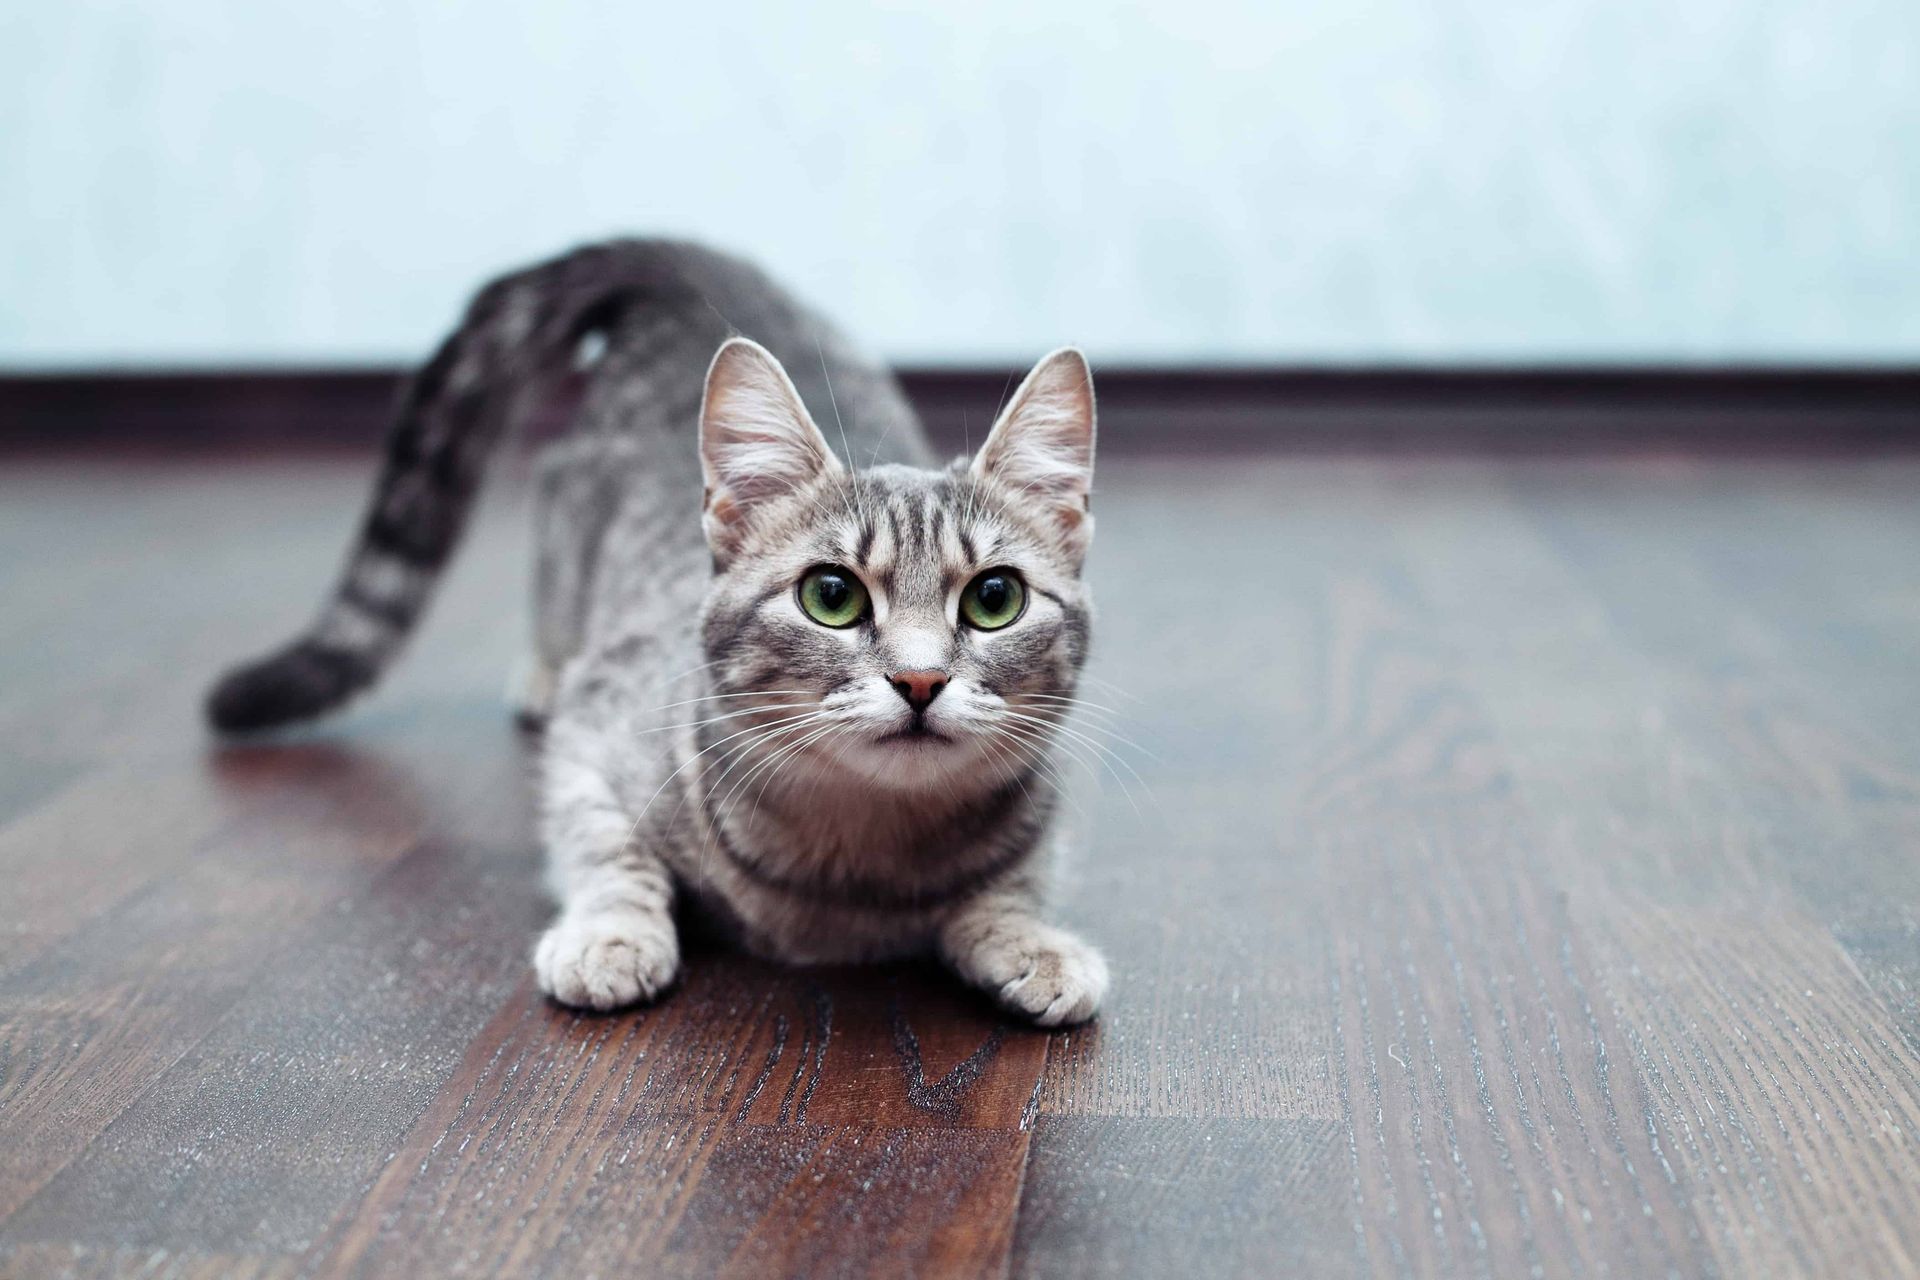 a cat on a hardwood floor